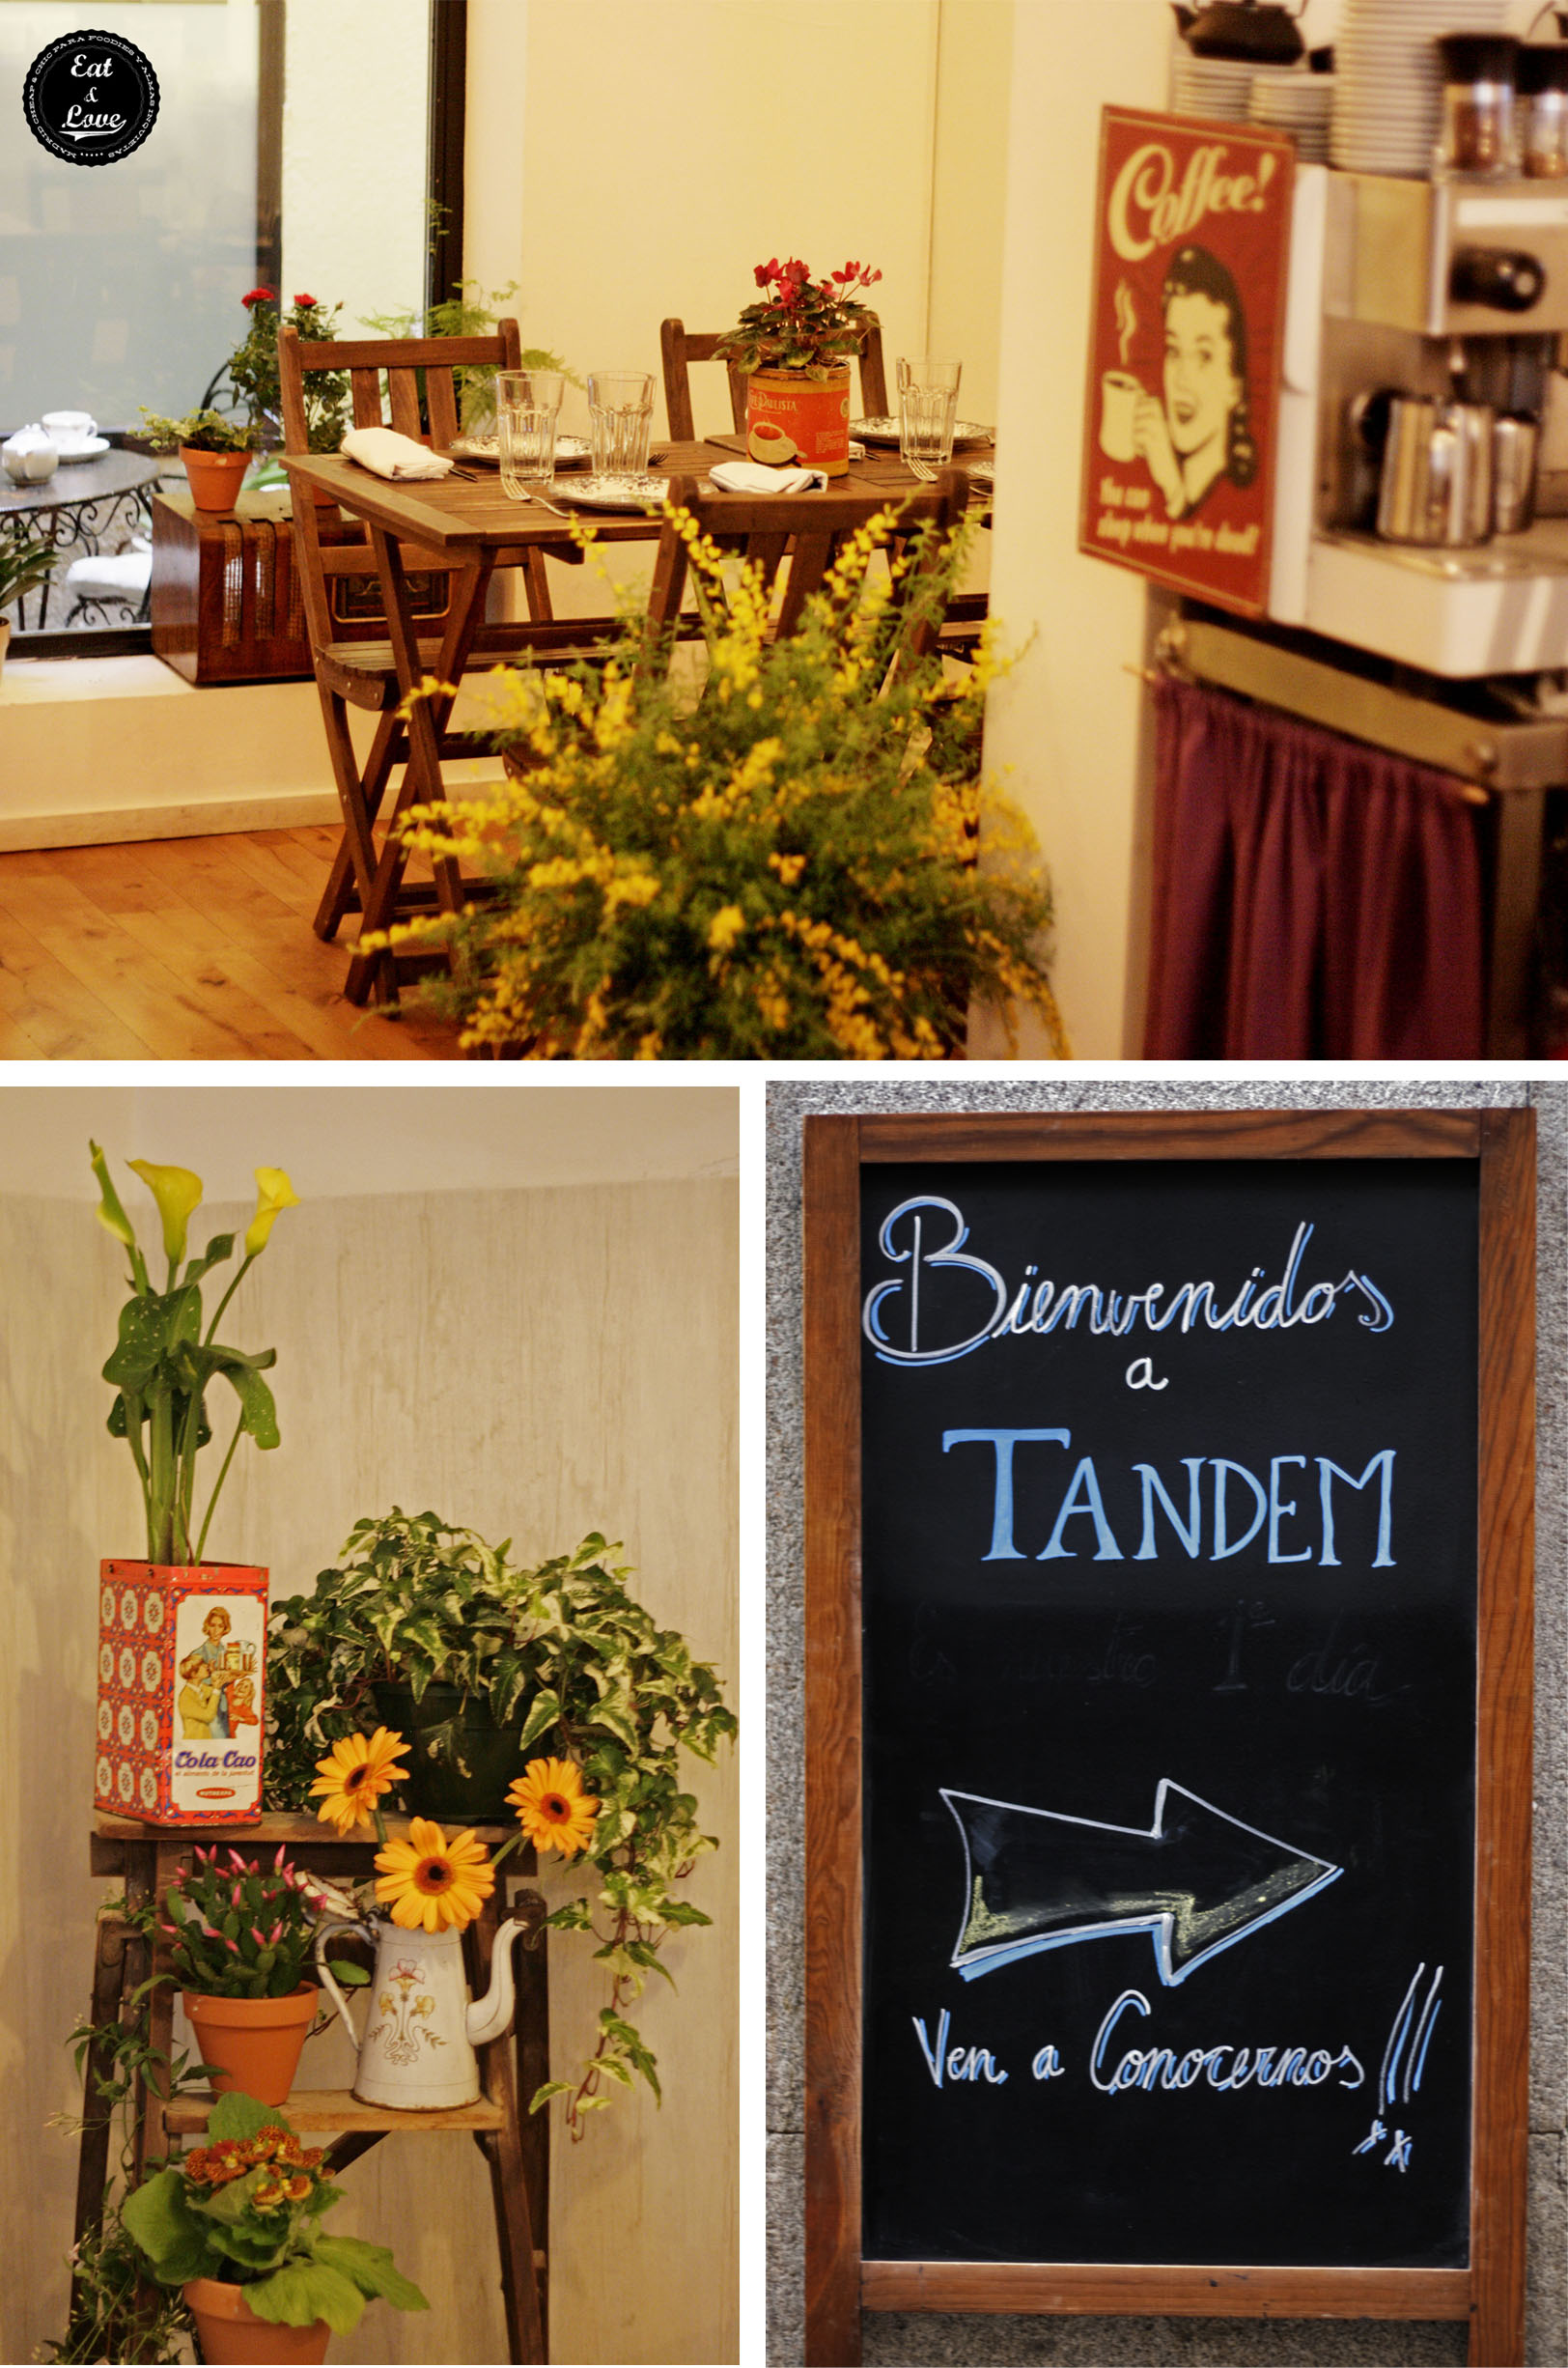 Restaurante Tandem by Triciclo en el barrio de las Letras - Madrid